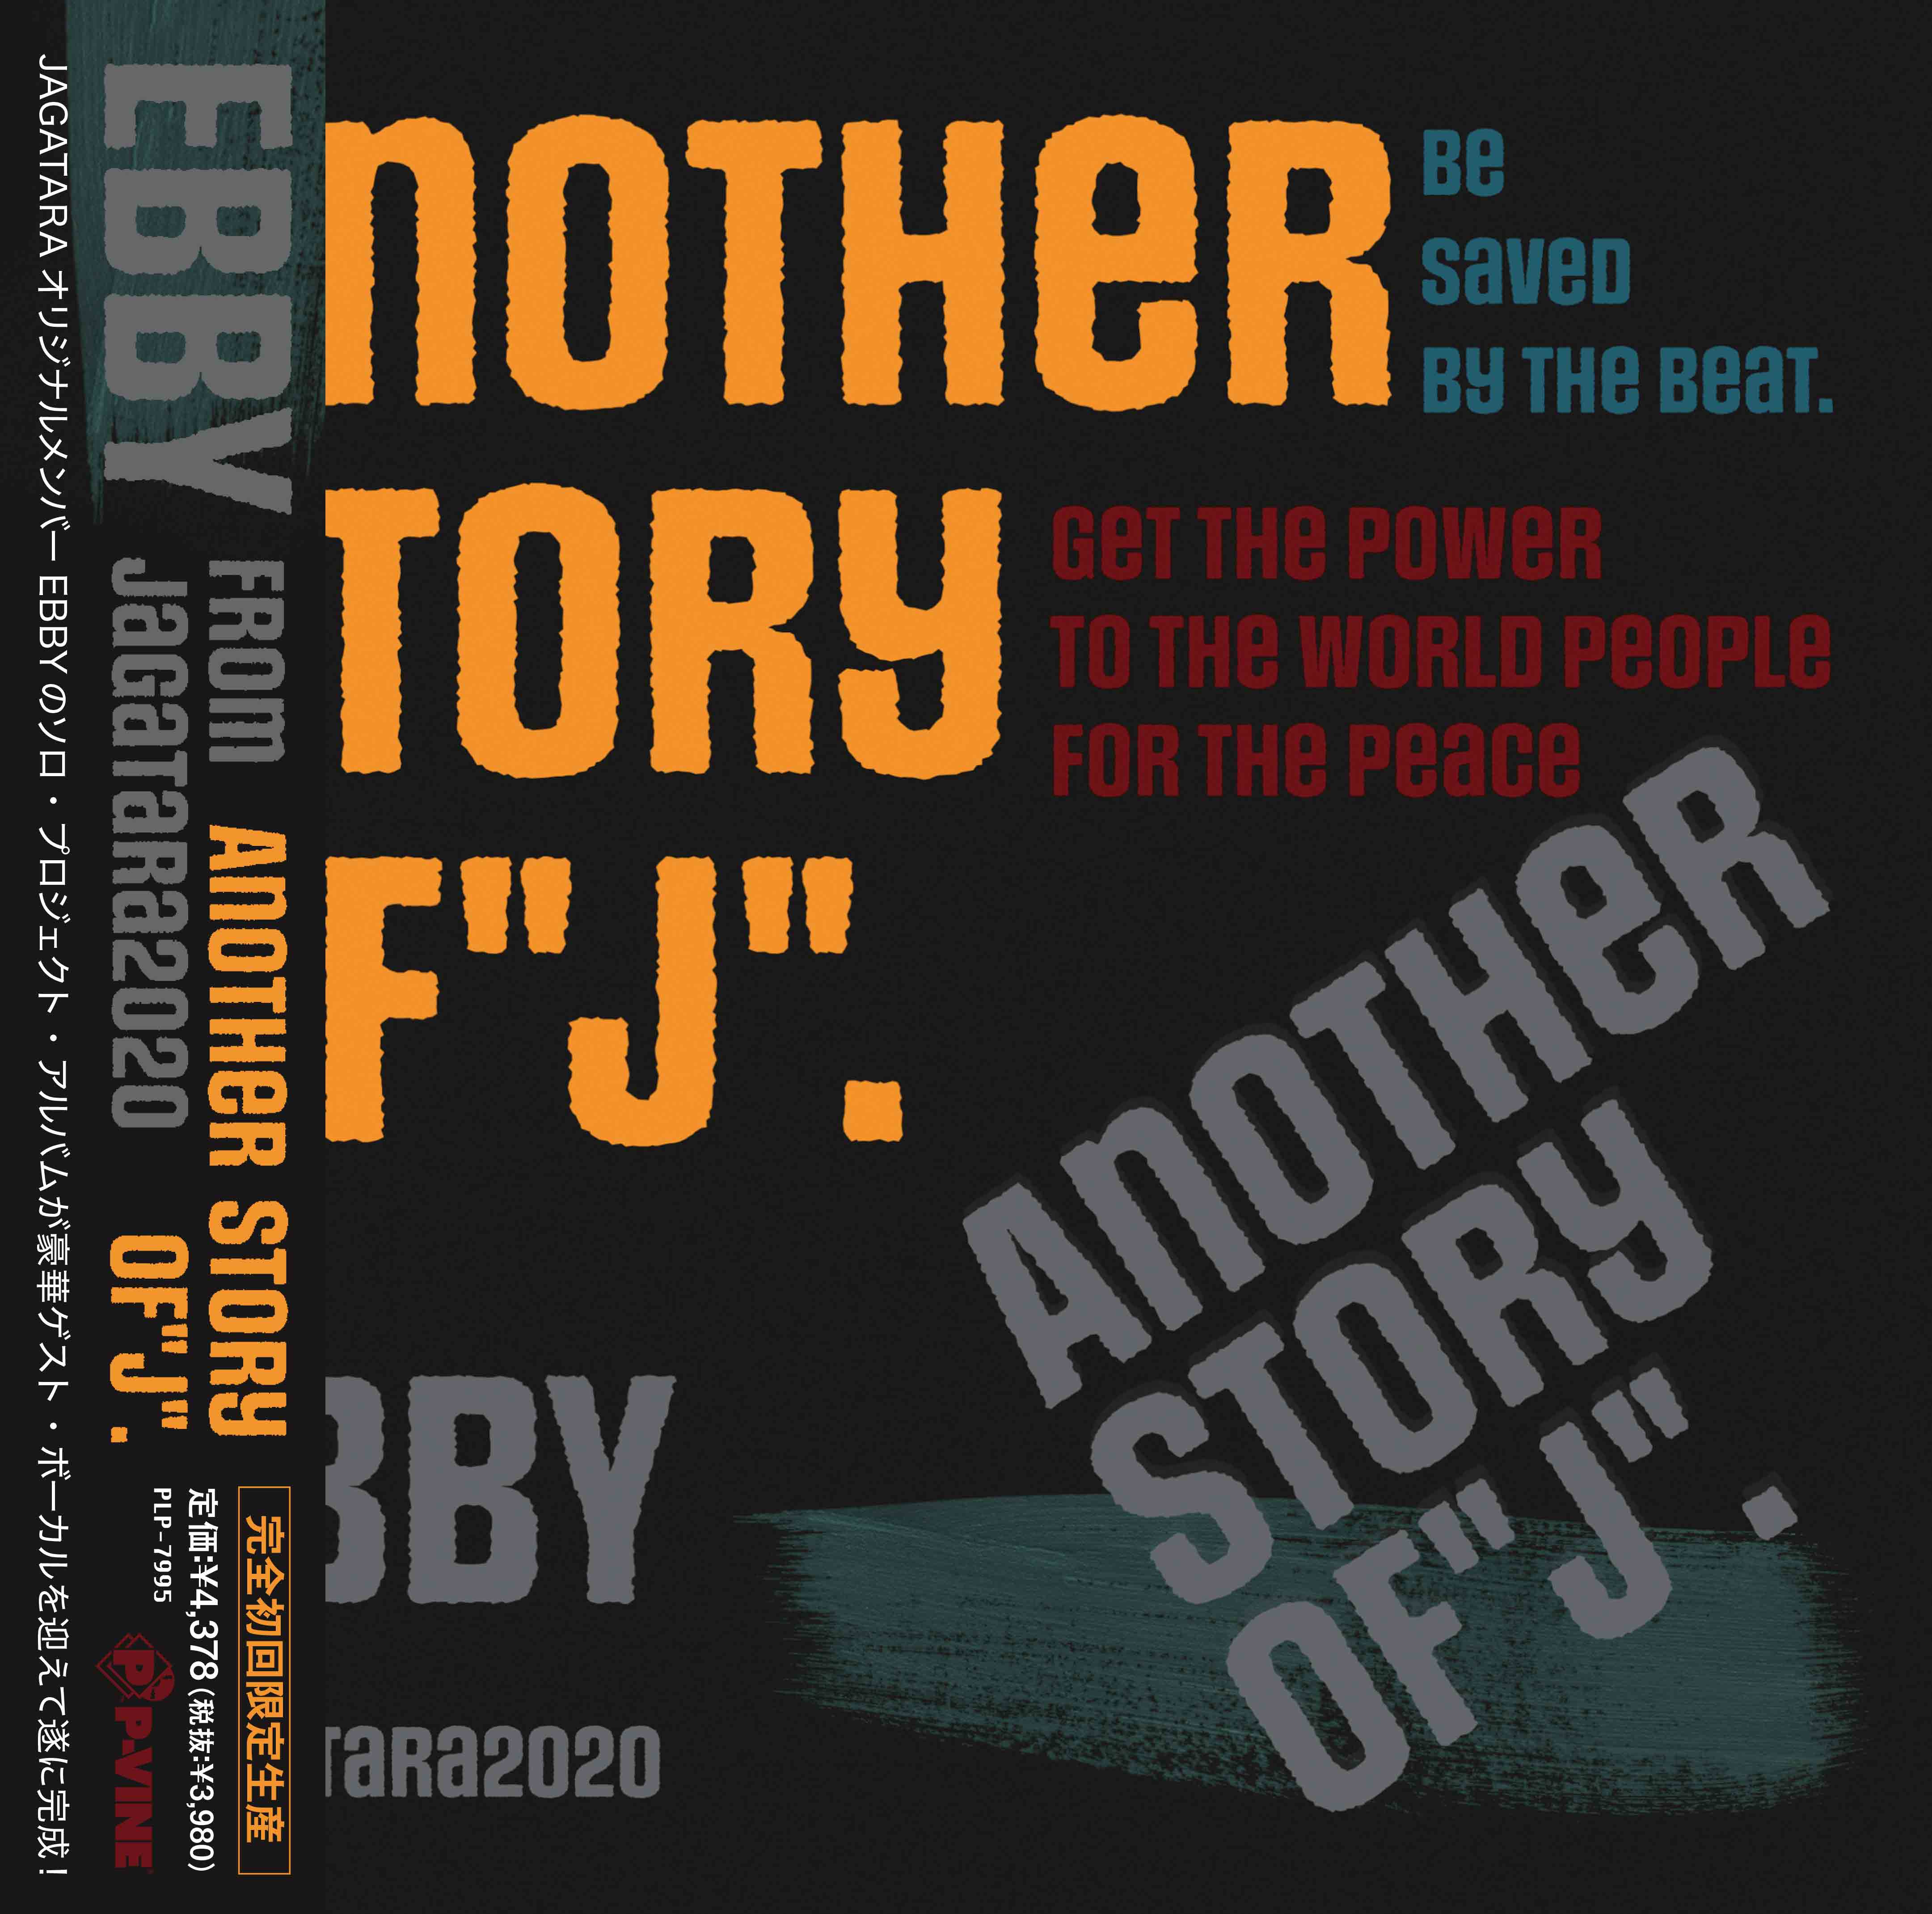 EBBY FROM JAGATARA2020 / アナザー・ストーリー・オブ“J”のアナログレコードジャケット (準備中)